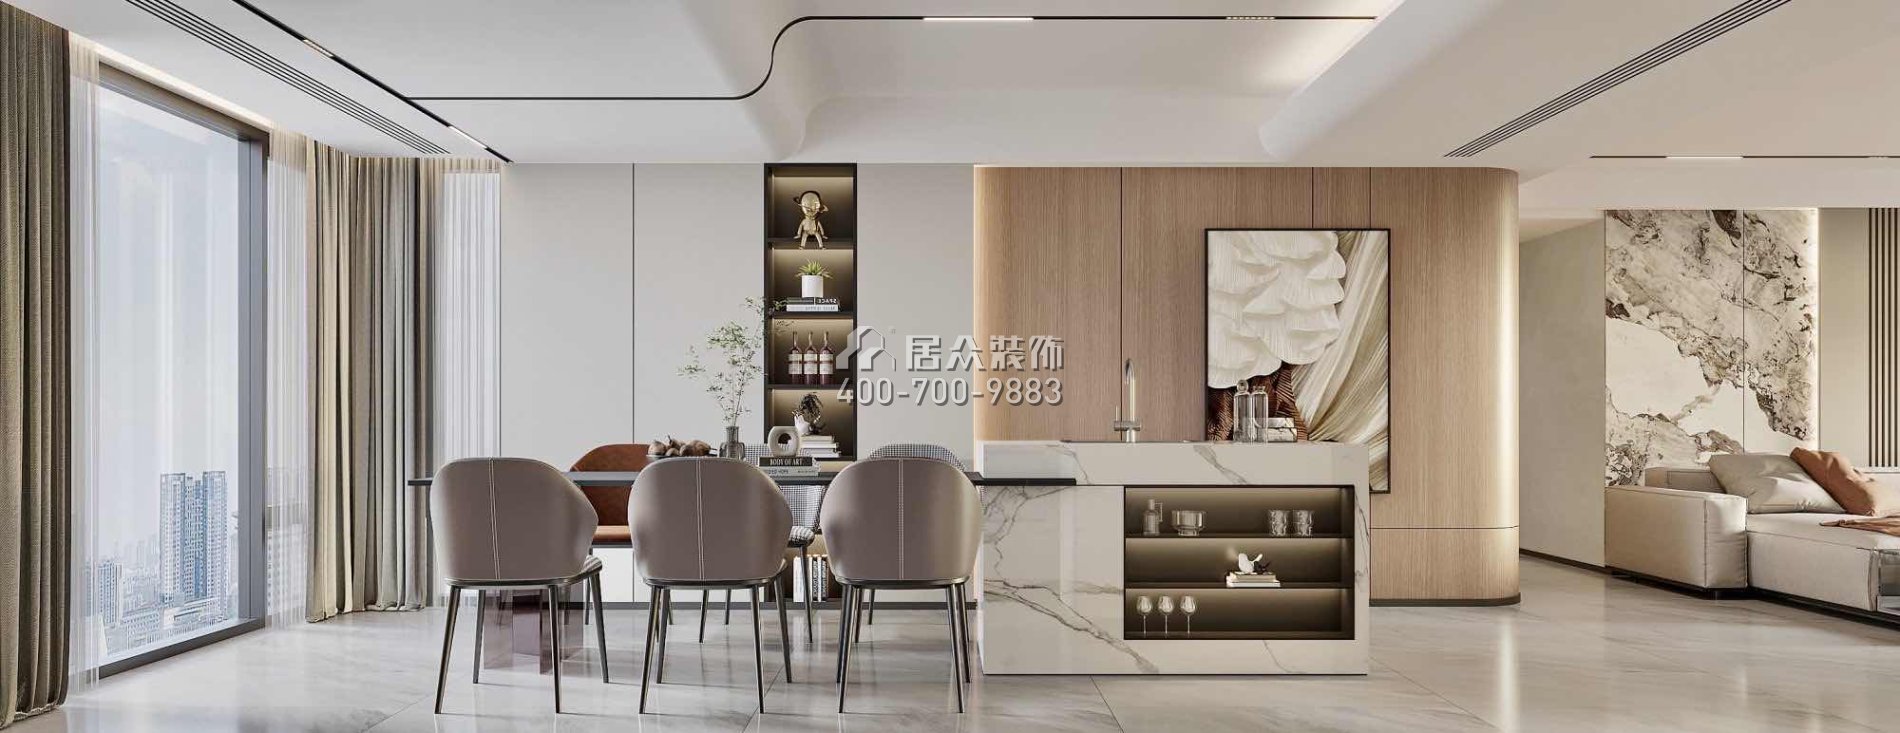 華發新城200平方米現代簡約風格平層戶型餐廳裝修效果圖